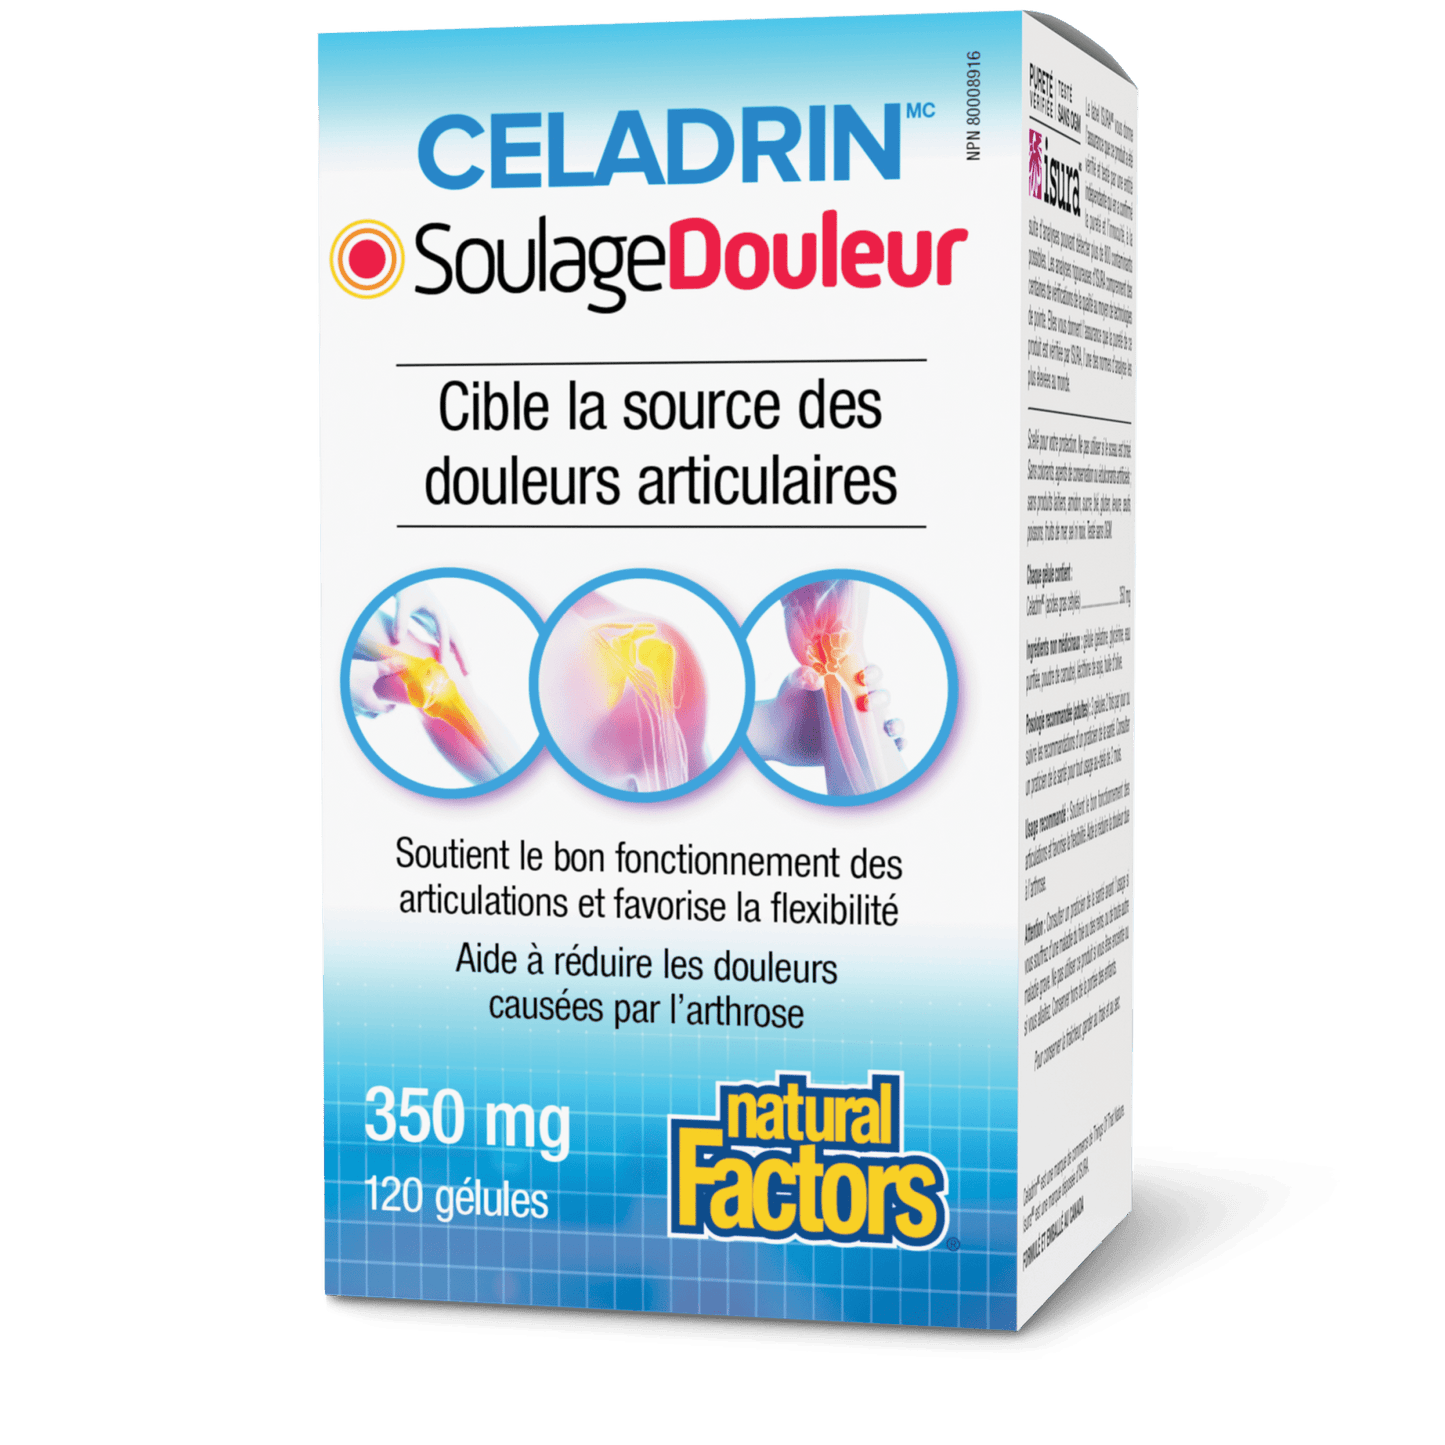 Celadrin SoulageDouleur, Natural Factors|v|image|2682